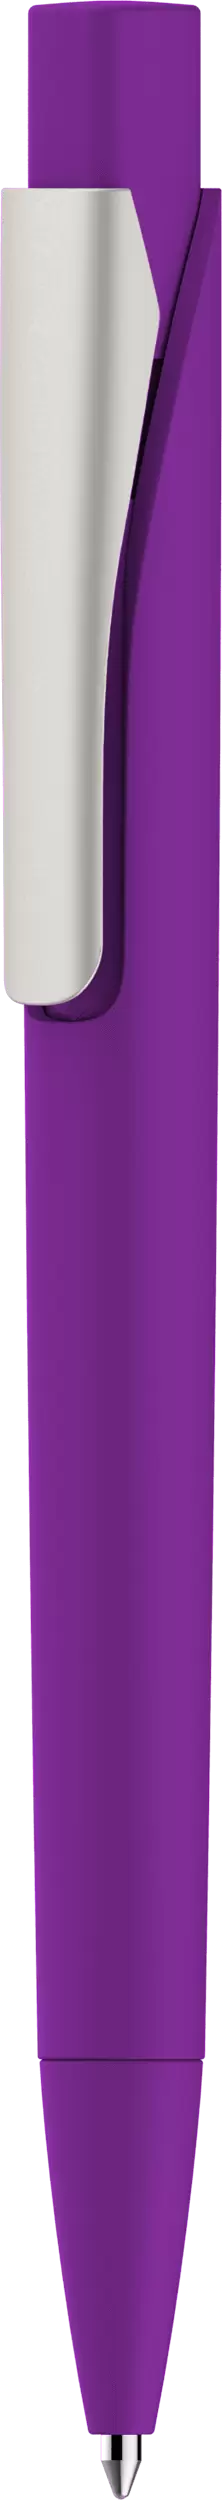 Ручка MASTER SOFT Фиолетовая 1040.11